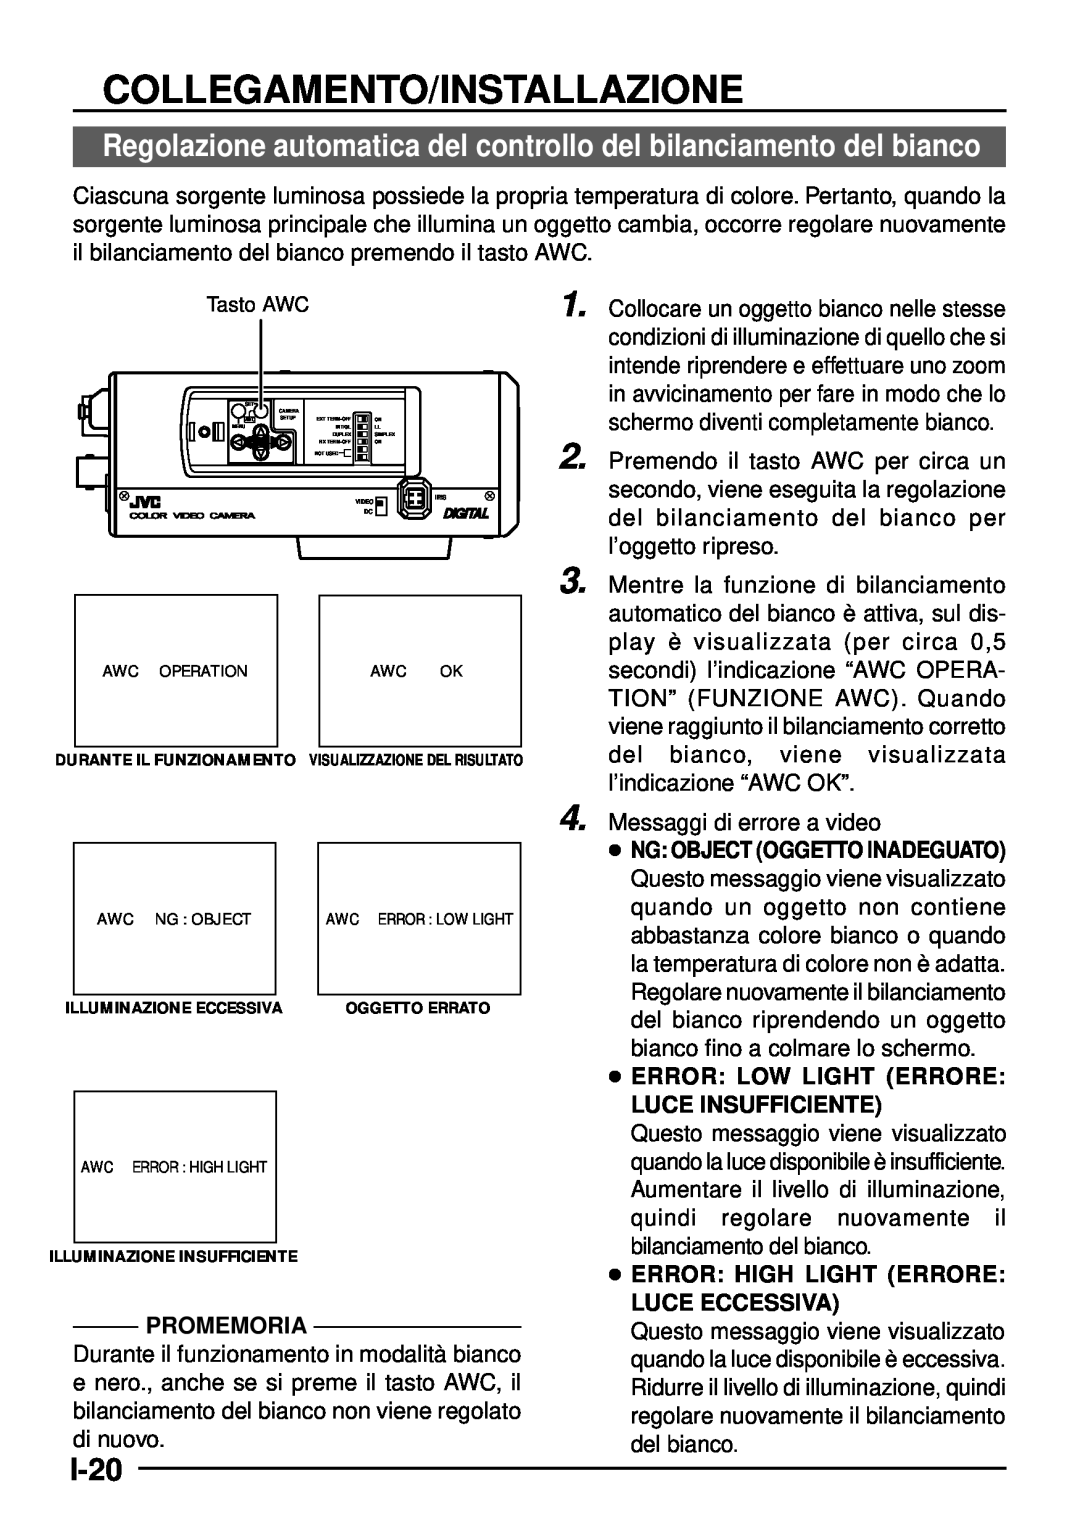 JVC TK-C1460 manual Regolazione automatica del controllo del bilanciamento del bianco, I-20, Collegamento/Installazione 